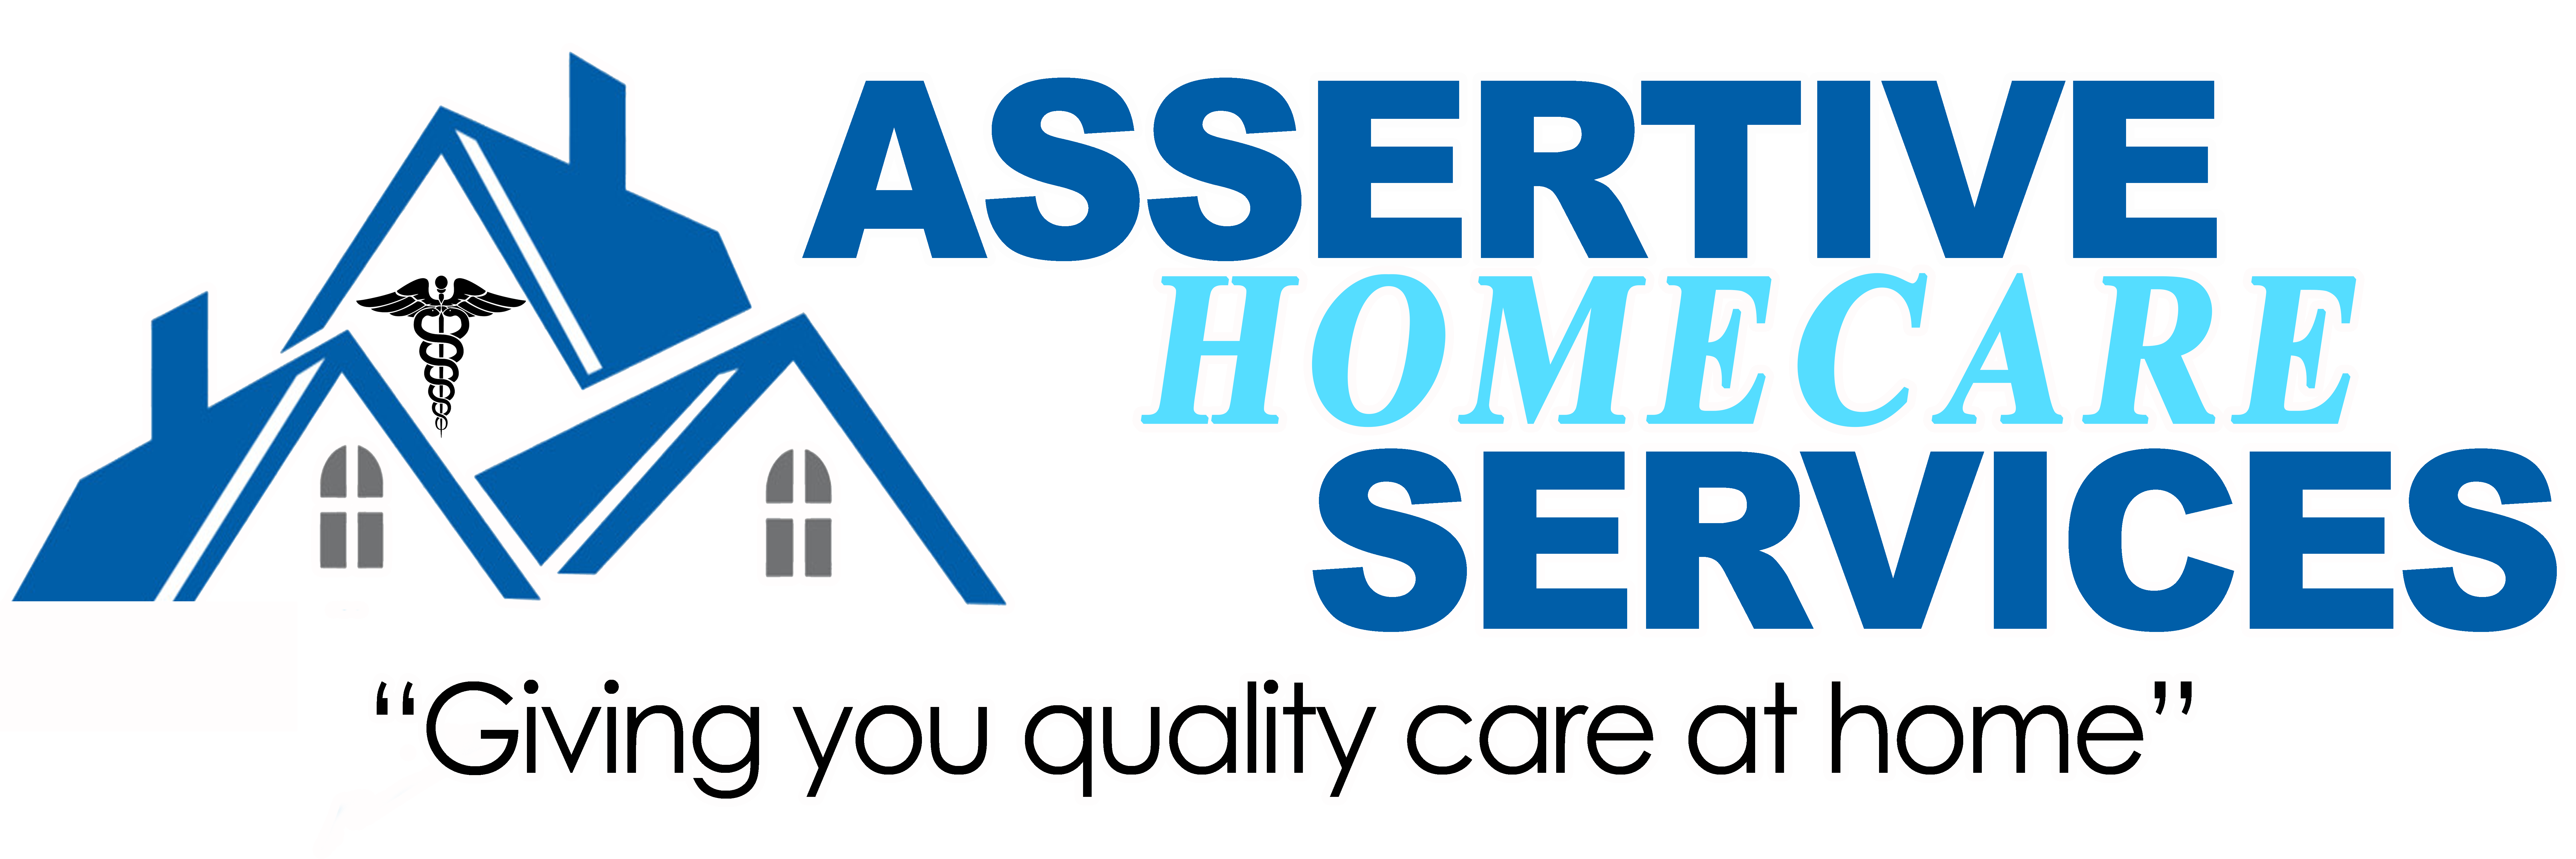 Assertive Care At Home, Inc. - La Mesa, CA